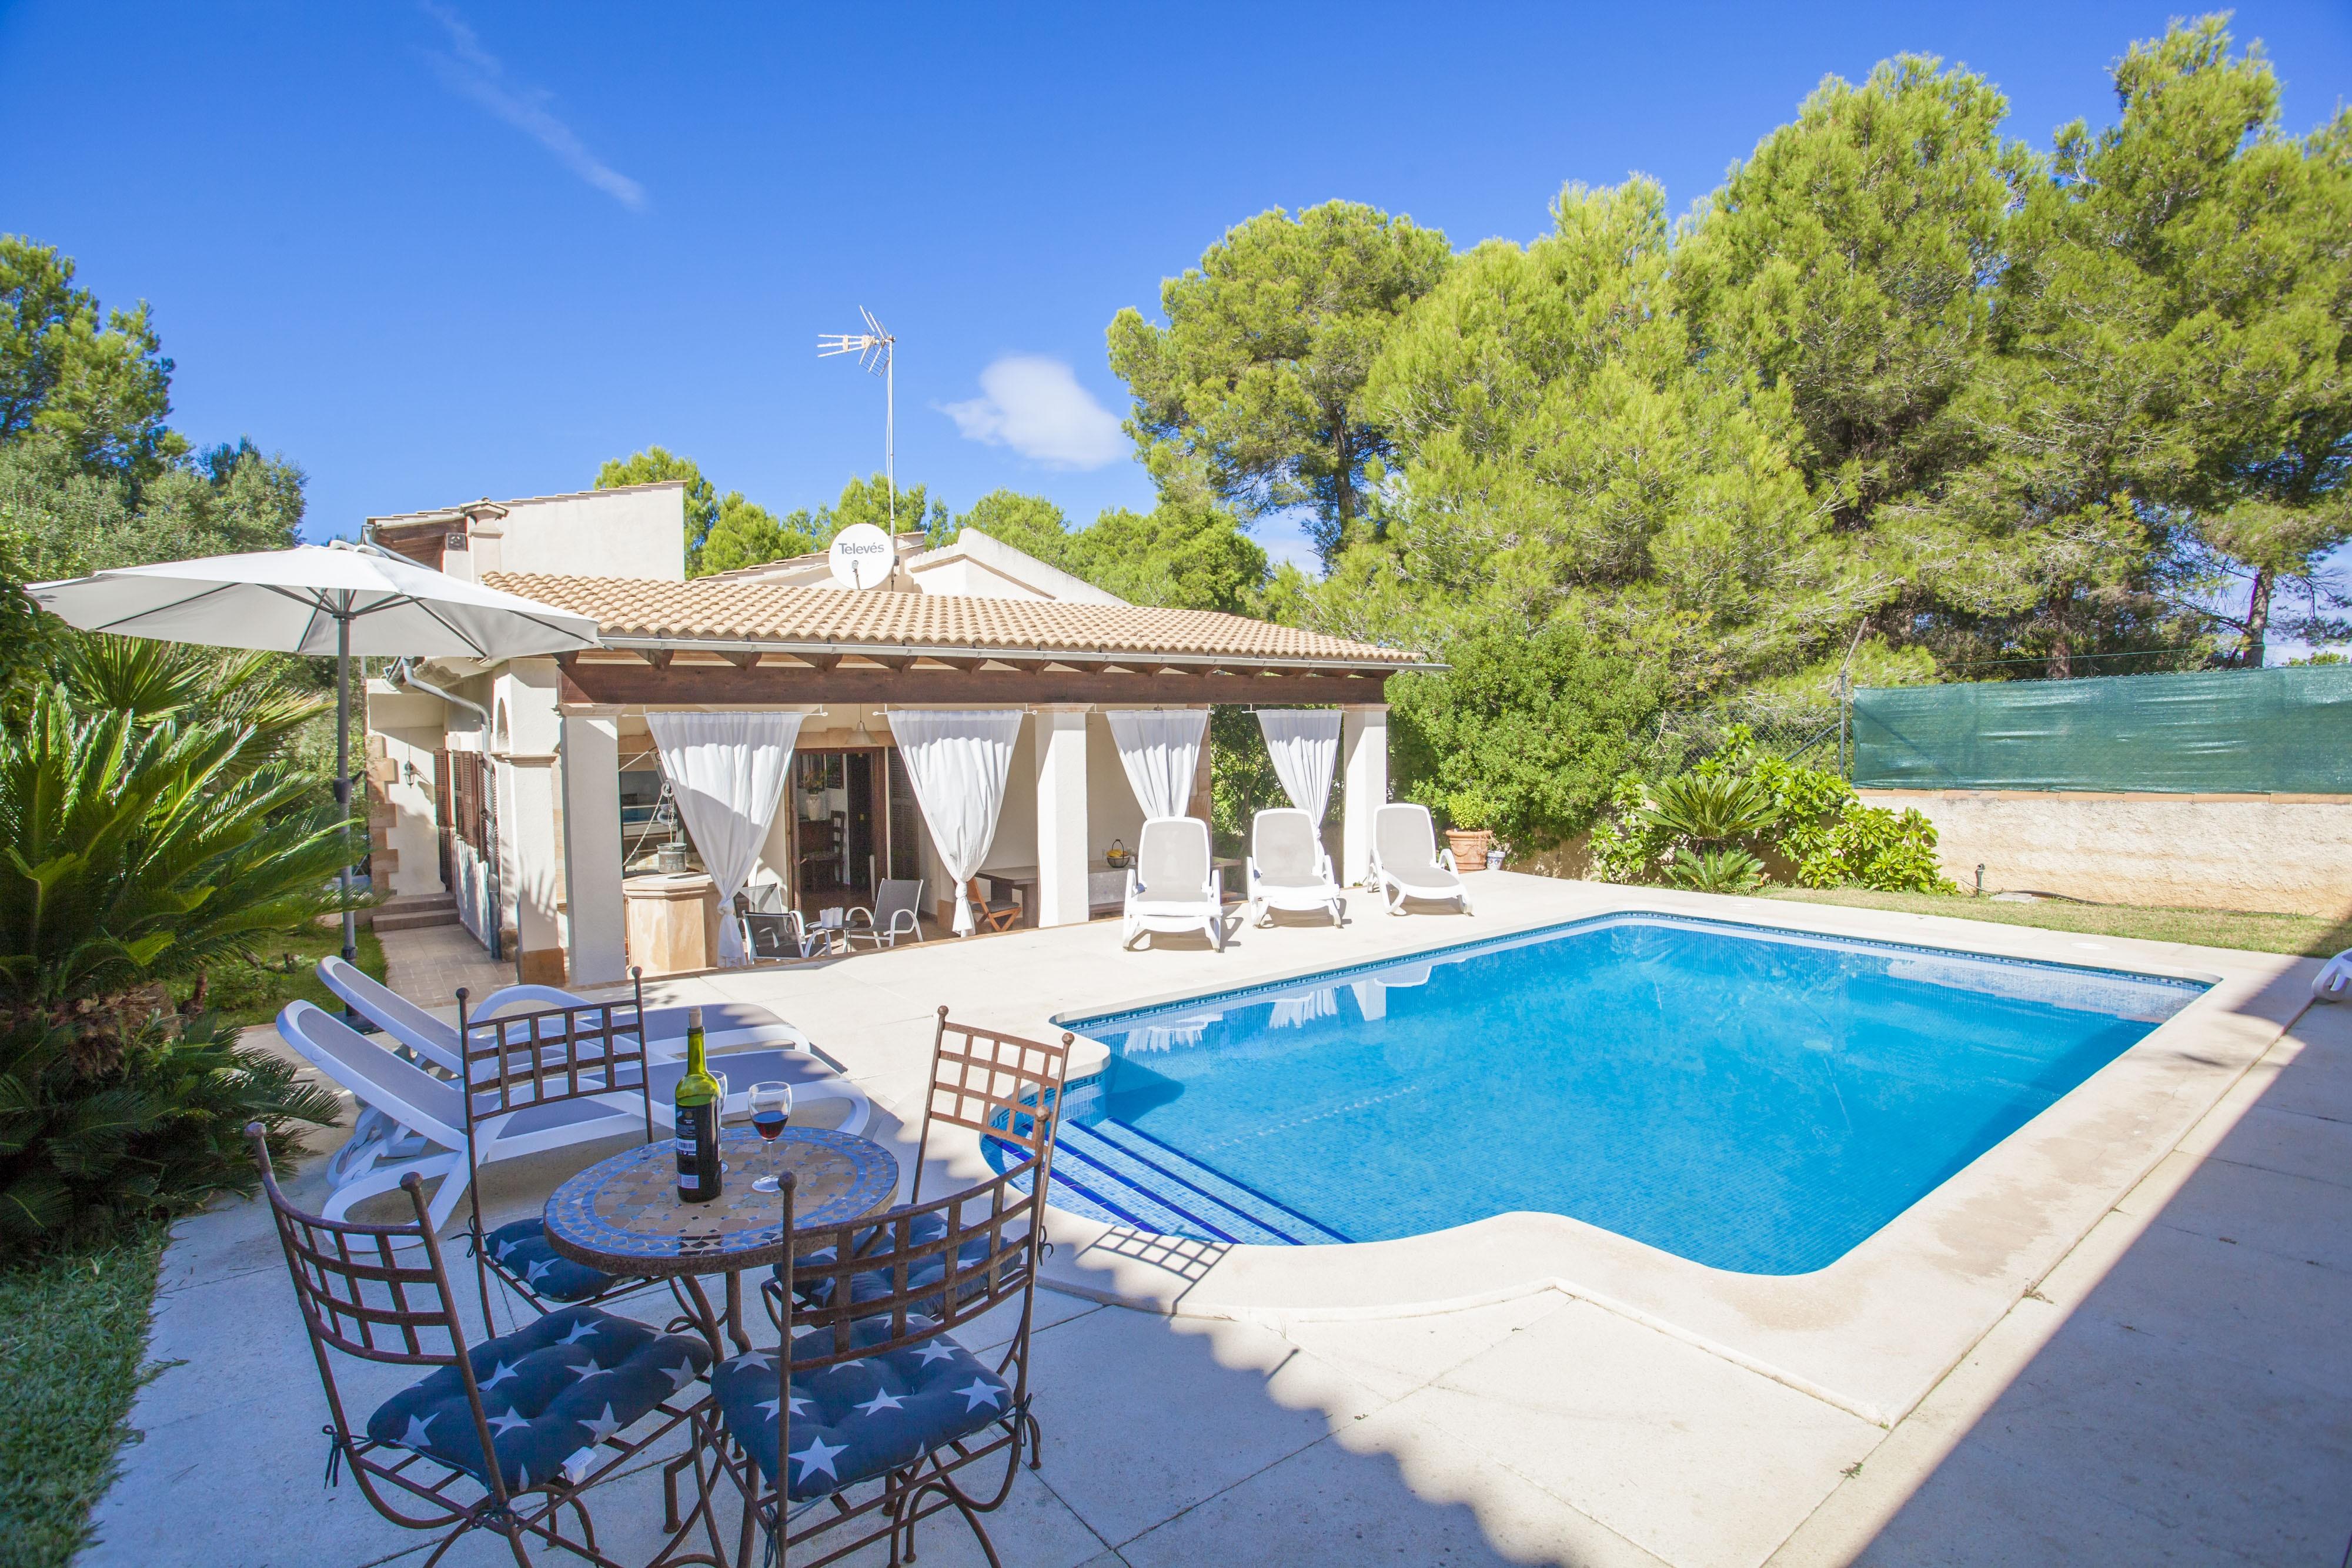 Property Image 1 - CA NA MATAS - Villa with private pool in Son Serra de Marina. Free WiFi